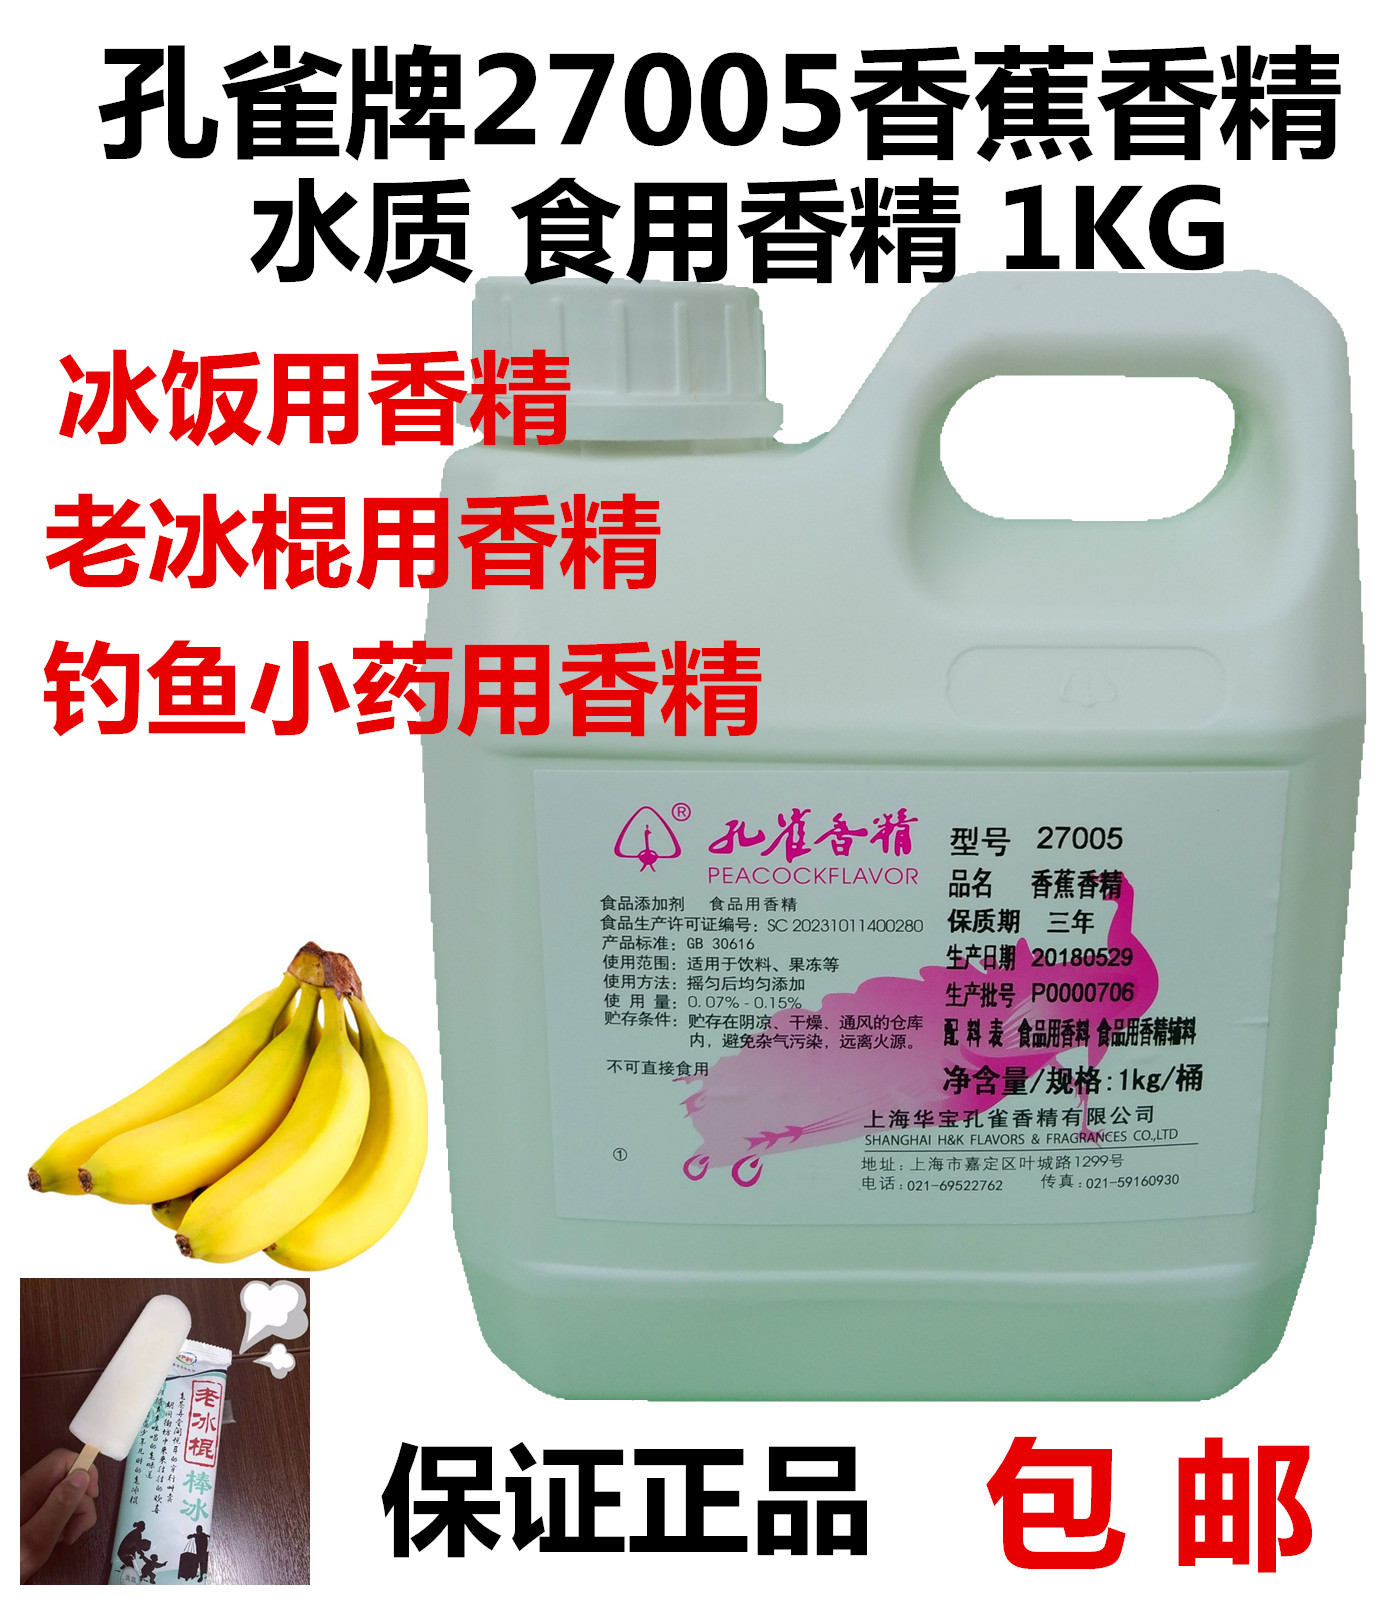 孔雀牌27005香蕉香精老冰棍饮料长乐冰饭用1KG水质香精食品添加剂